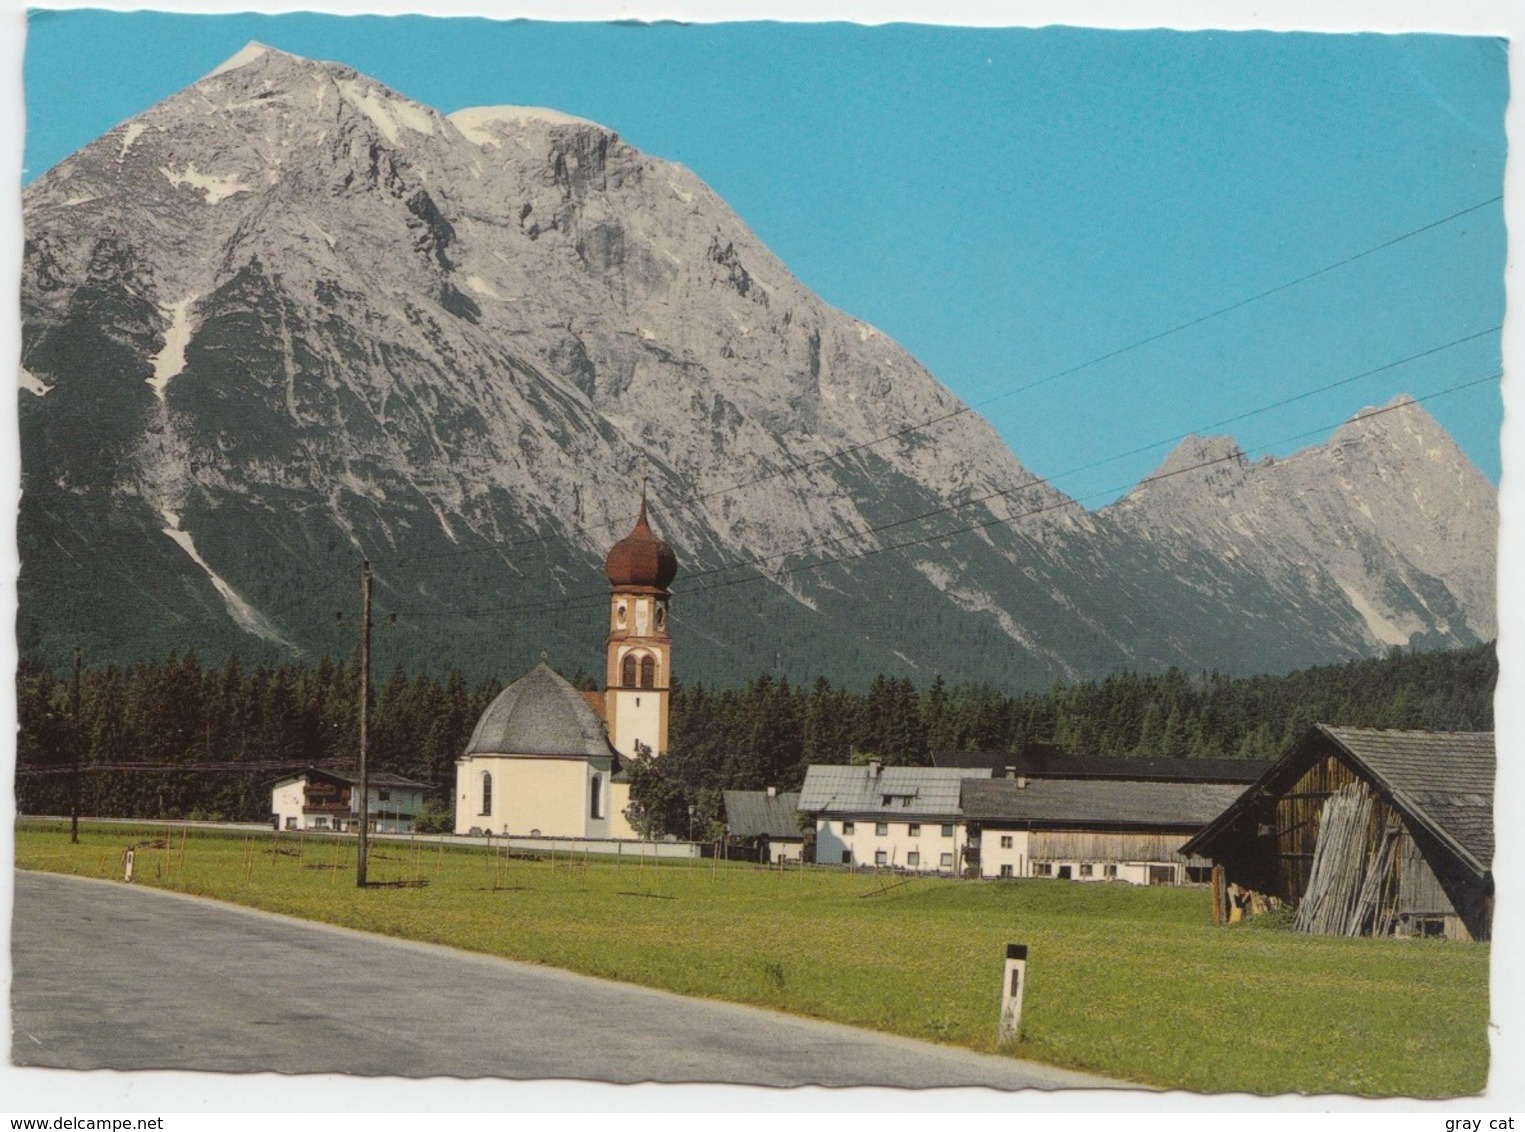 Leutasch, Kirchplatzl Gegen Hohe Munde, 2662 M, Tirol, Austria, 1983 Used Postcard [21798] - Leutasch